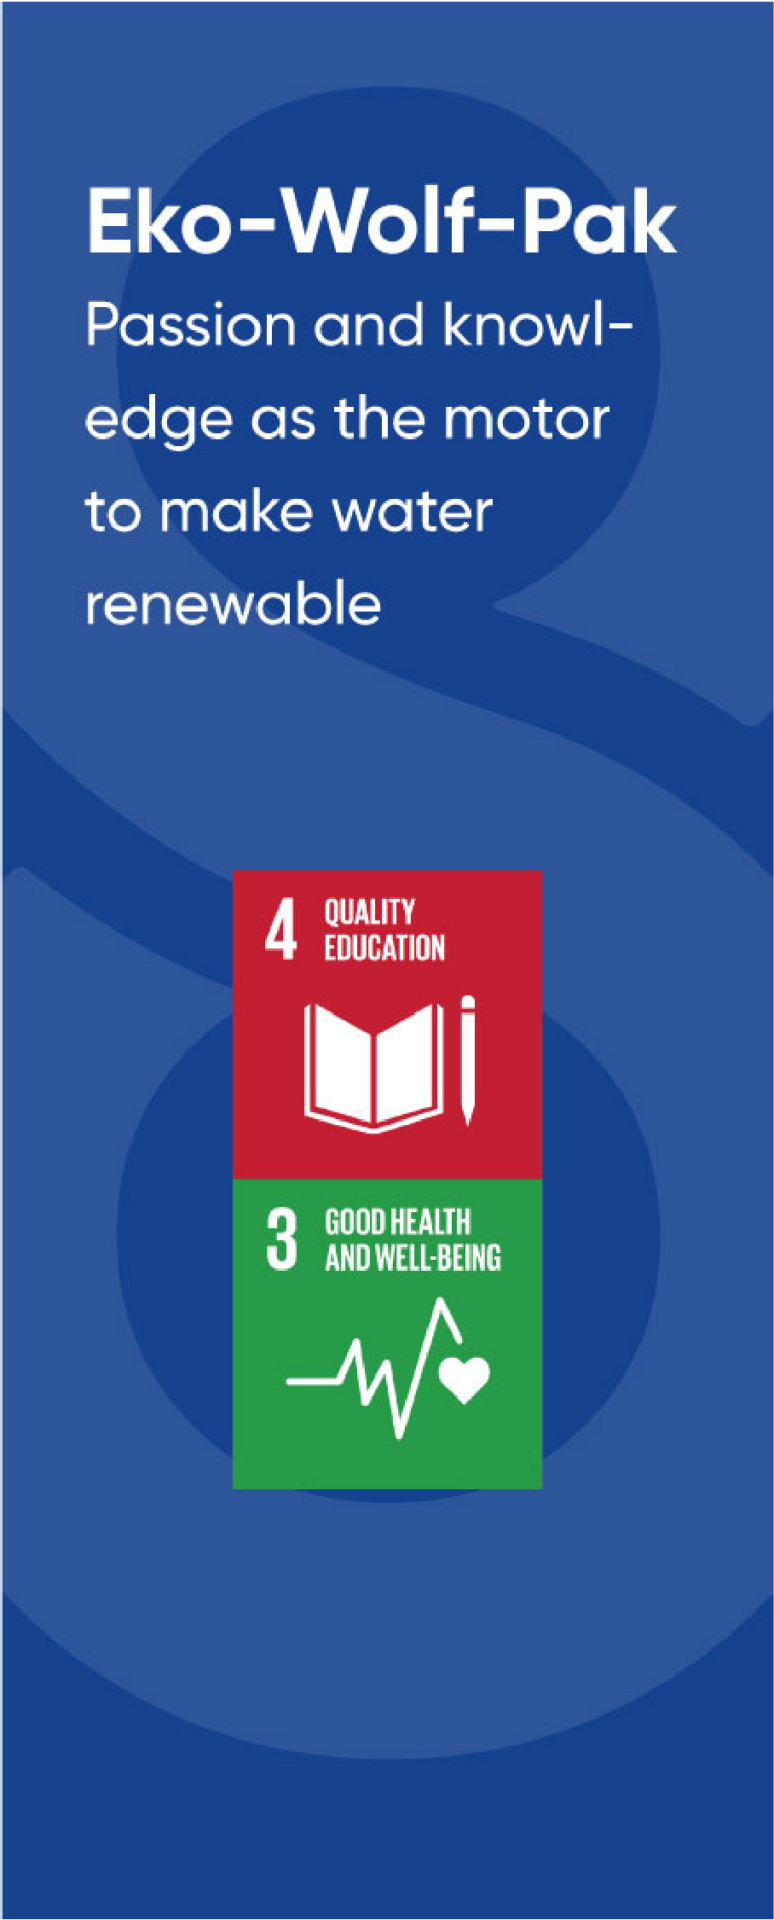 Symboles de certains piliers du développement durable: Quality education, Good health and well-being.